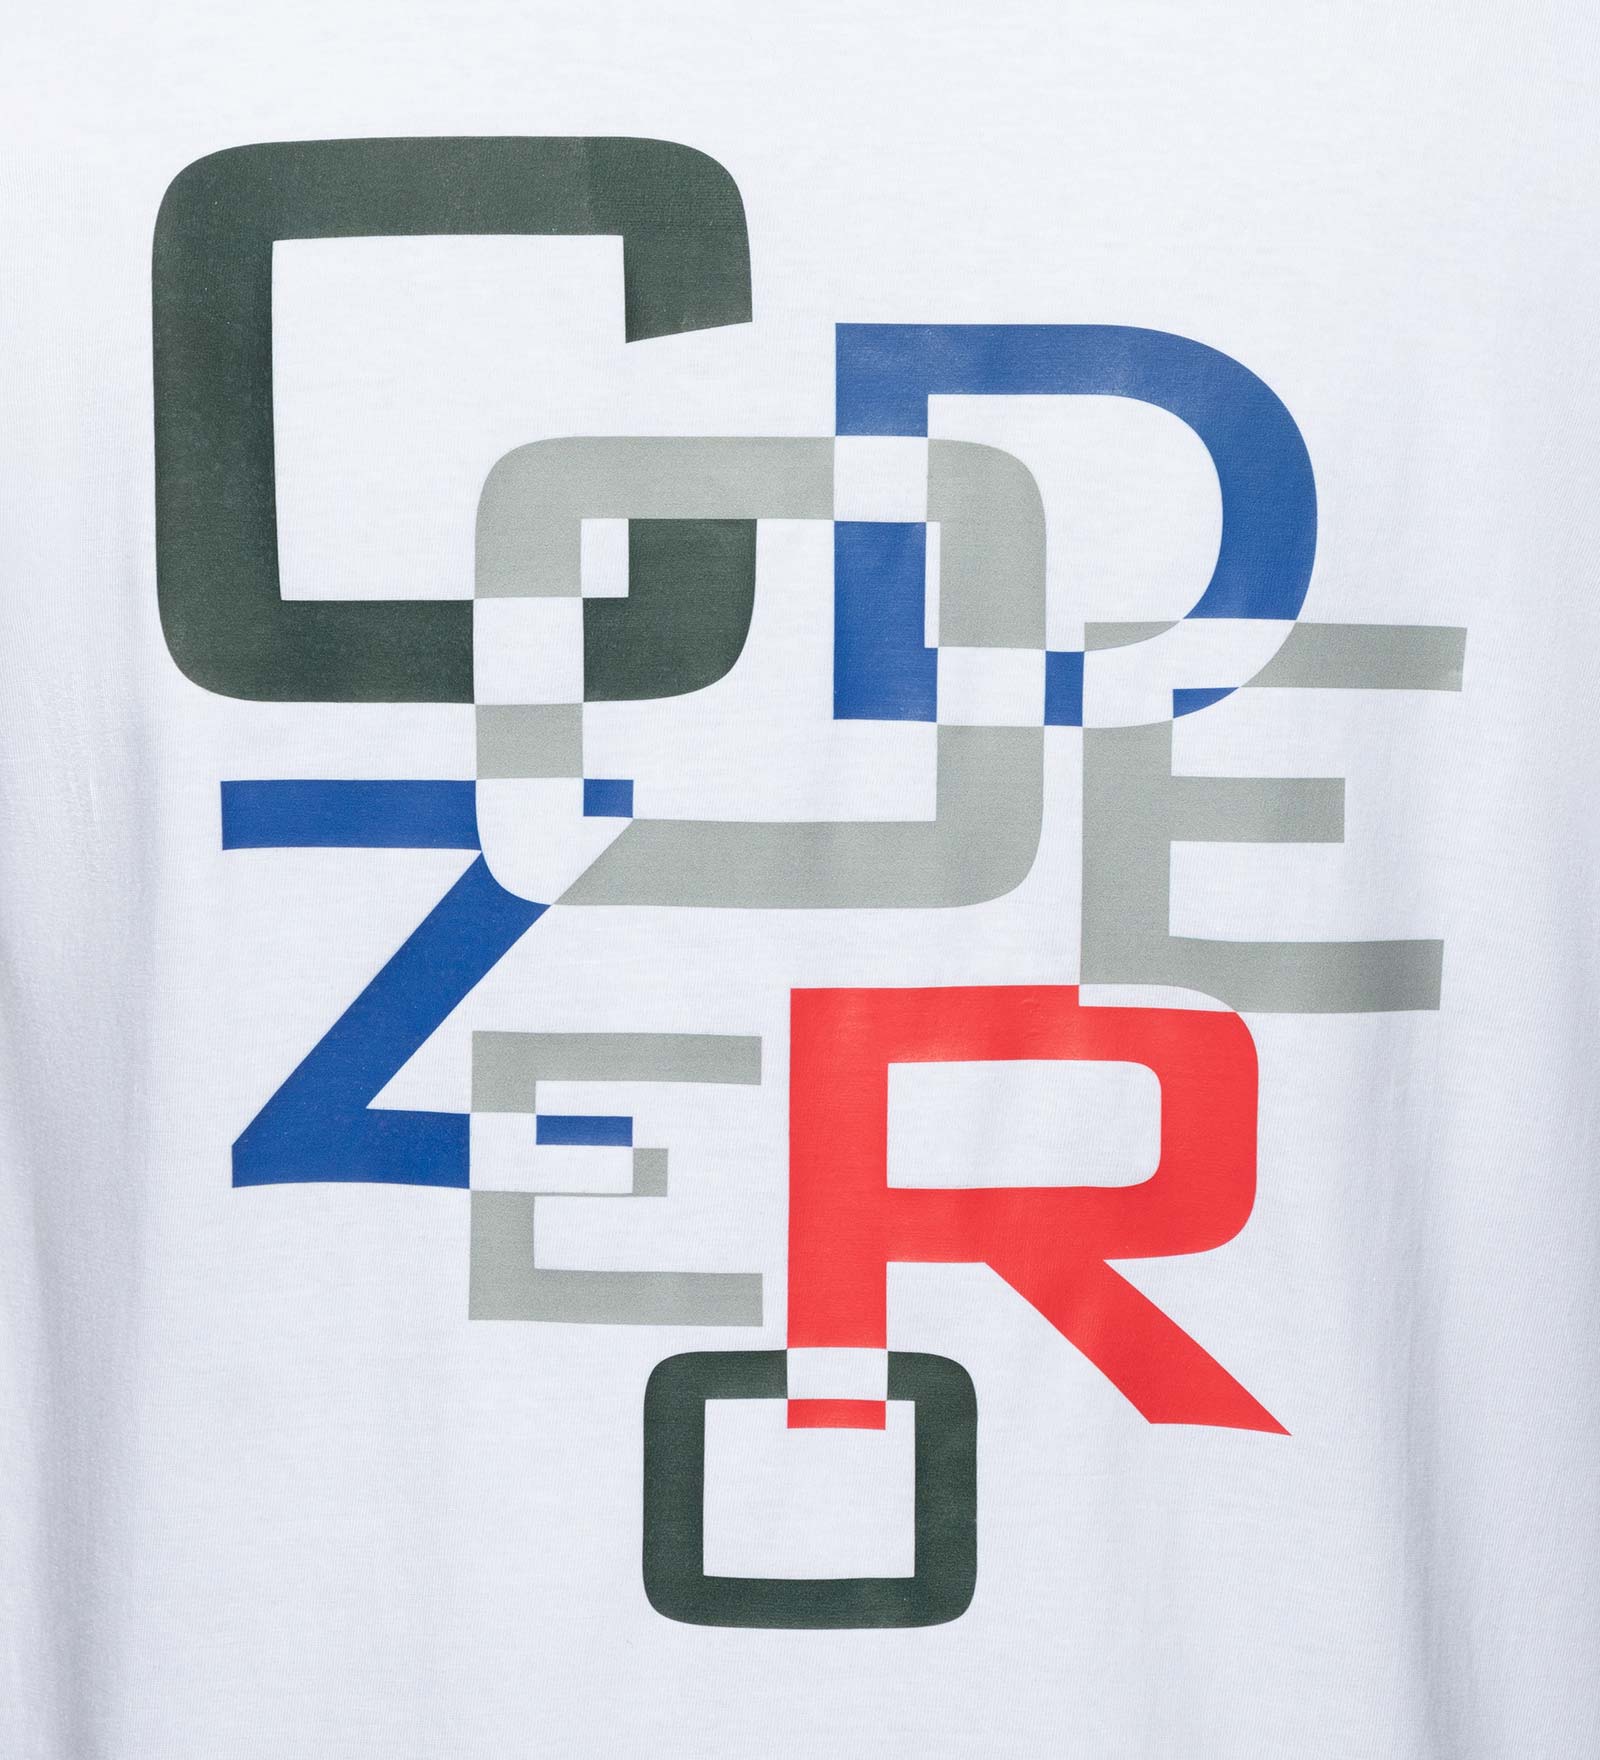 T-Shirt CODE-ZERO white